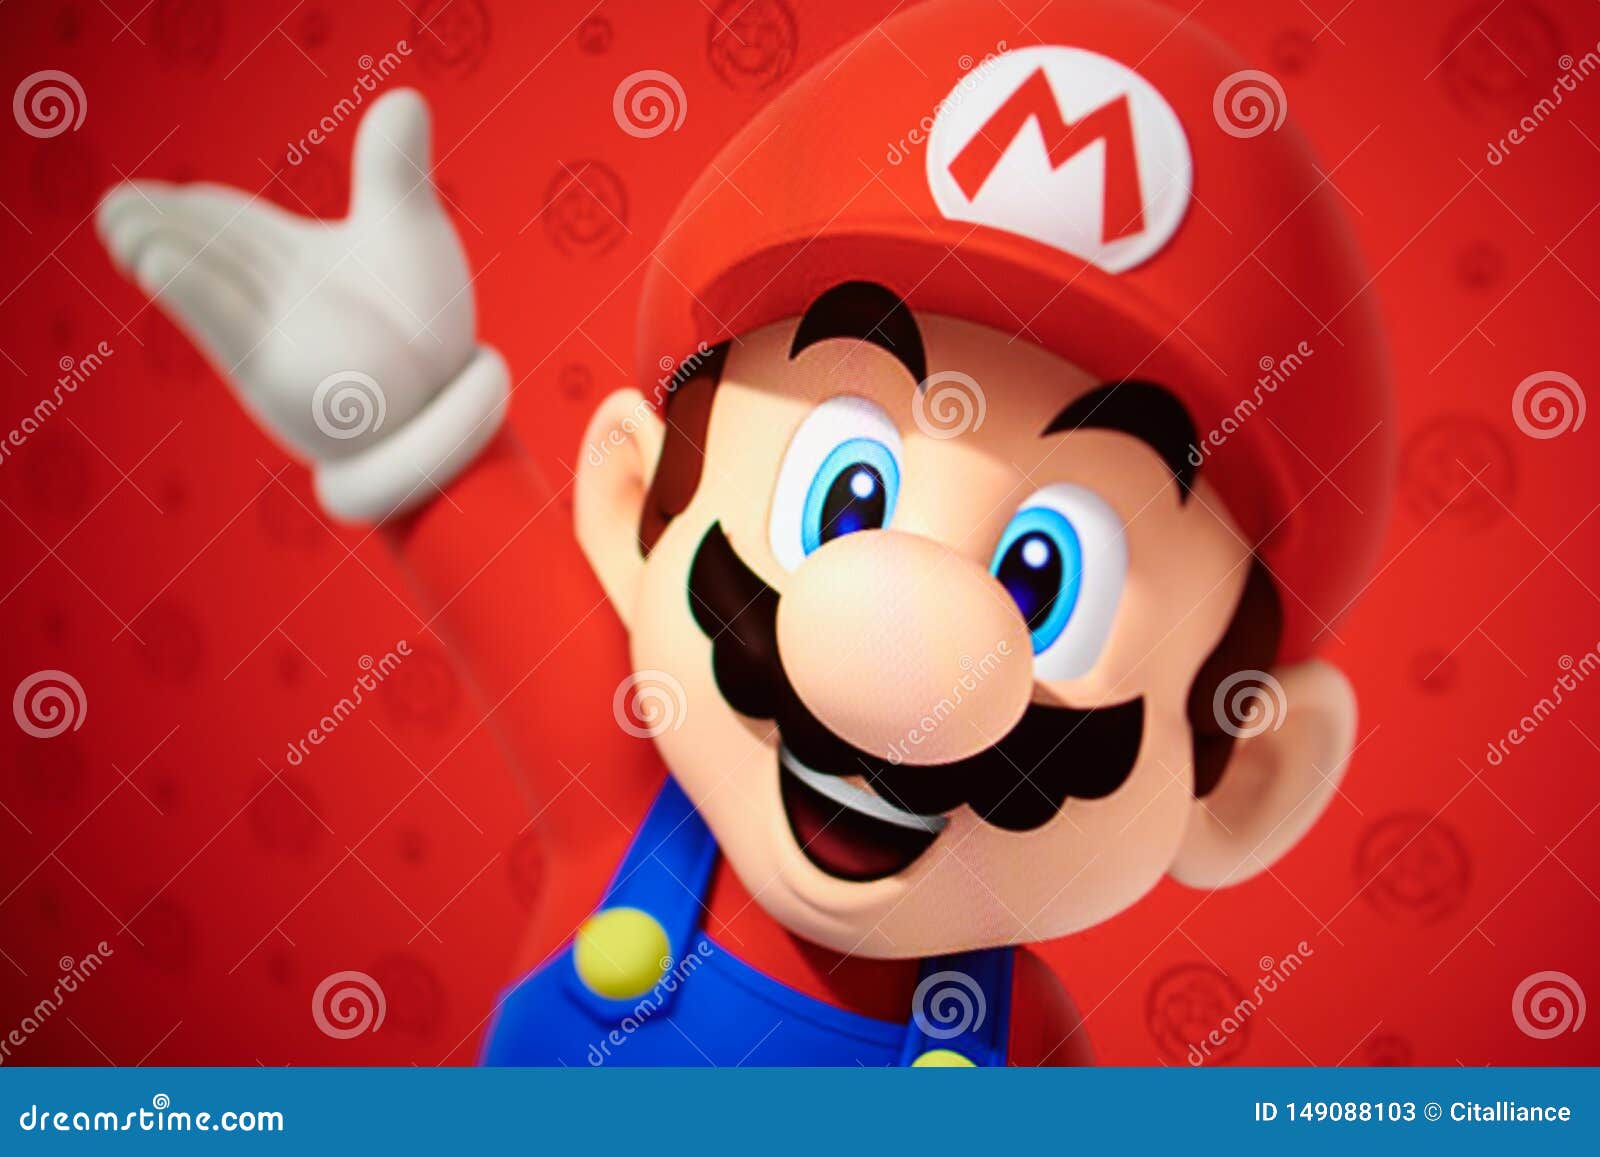 6 Super Mario Fotos - Kostenlose und Royalty-Free Stock-Fotos